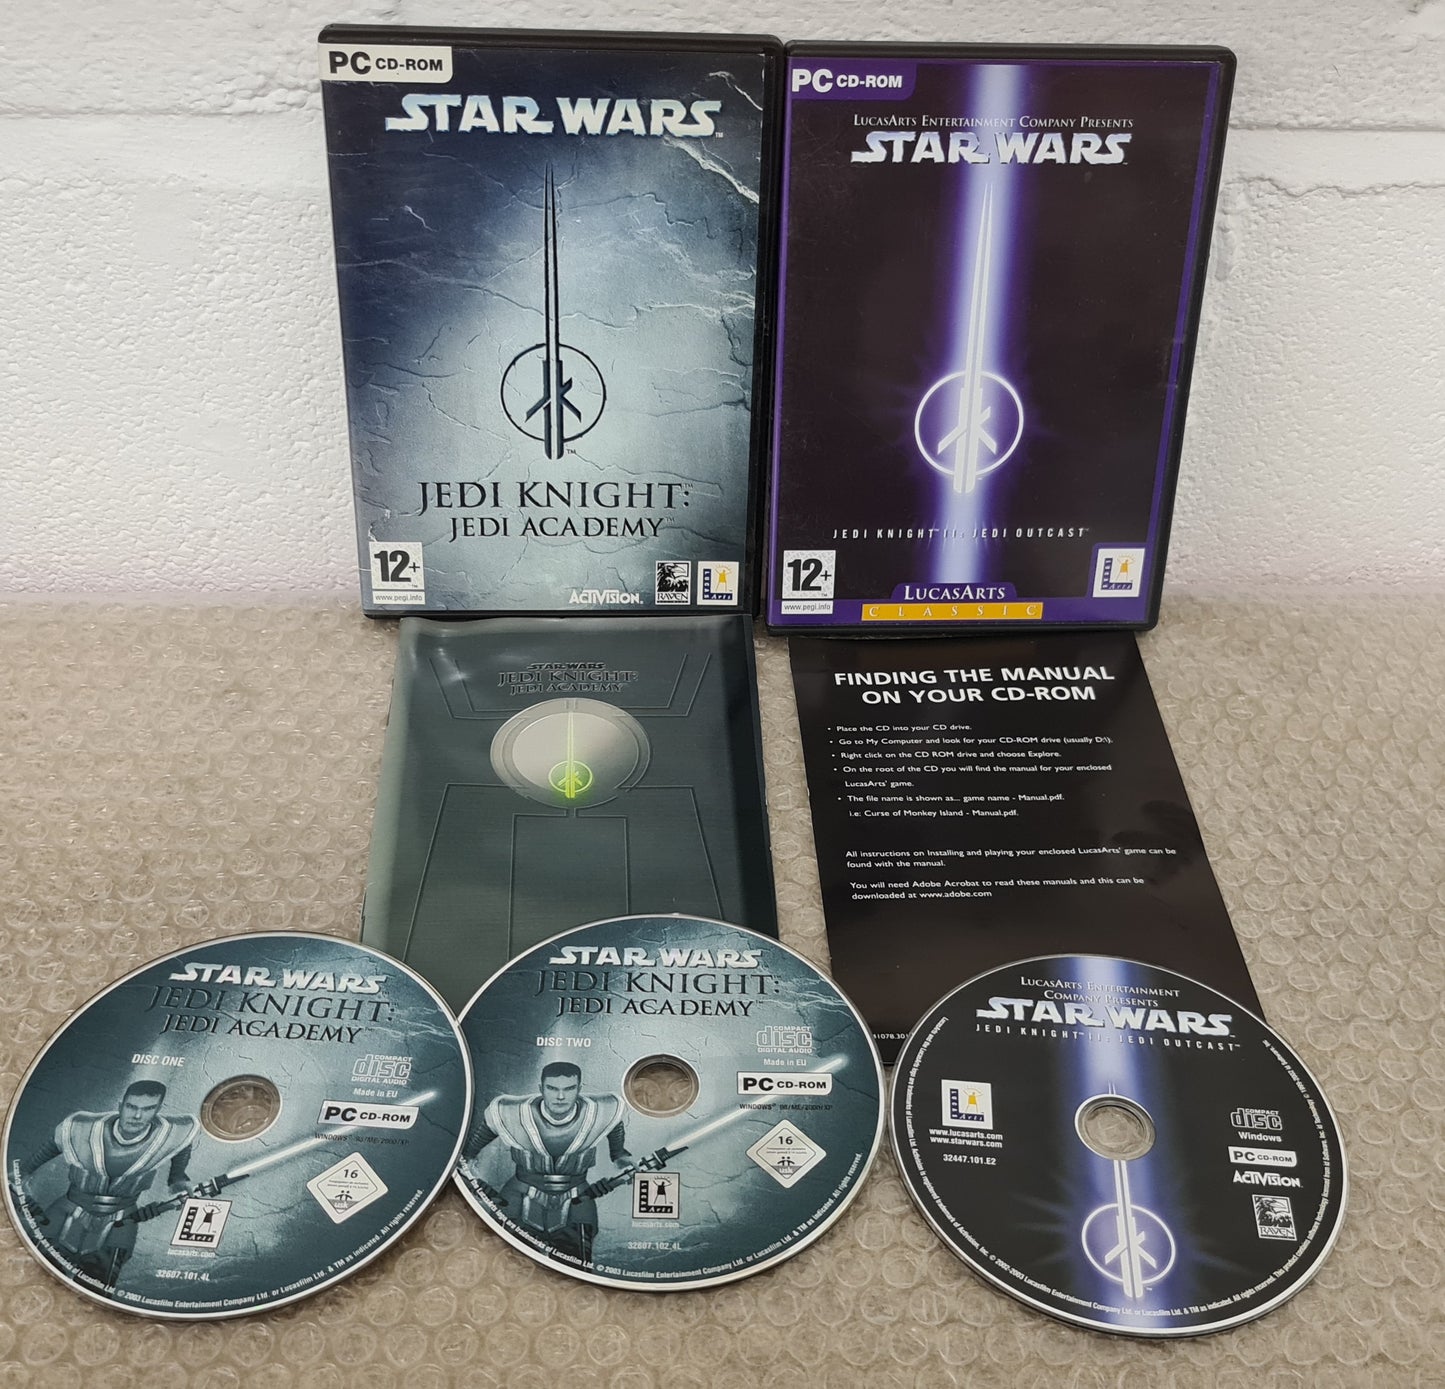 Star Wars Jedi Knight Academy & Outcast PC Game Bundle